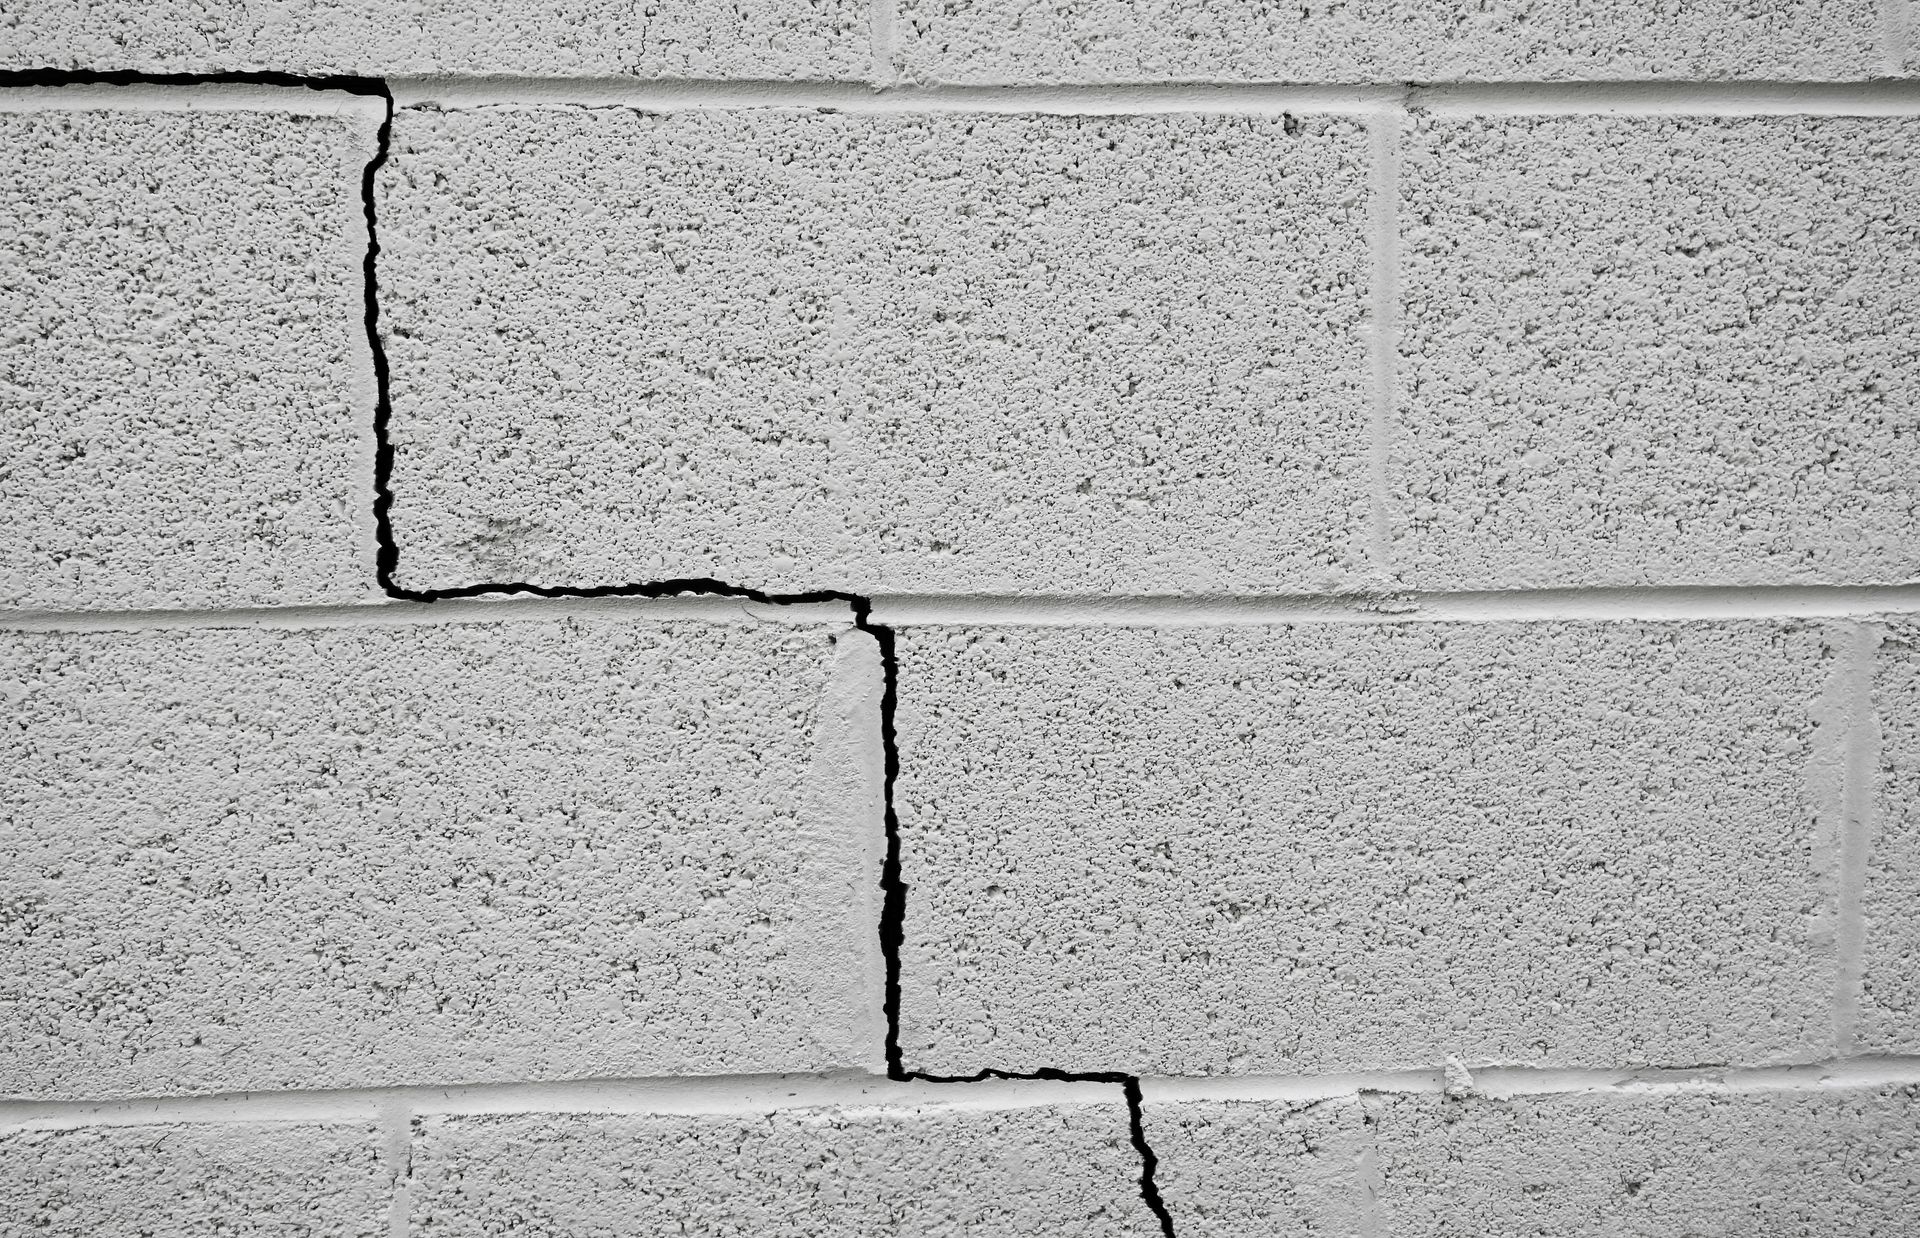 basement wall crack repair